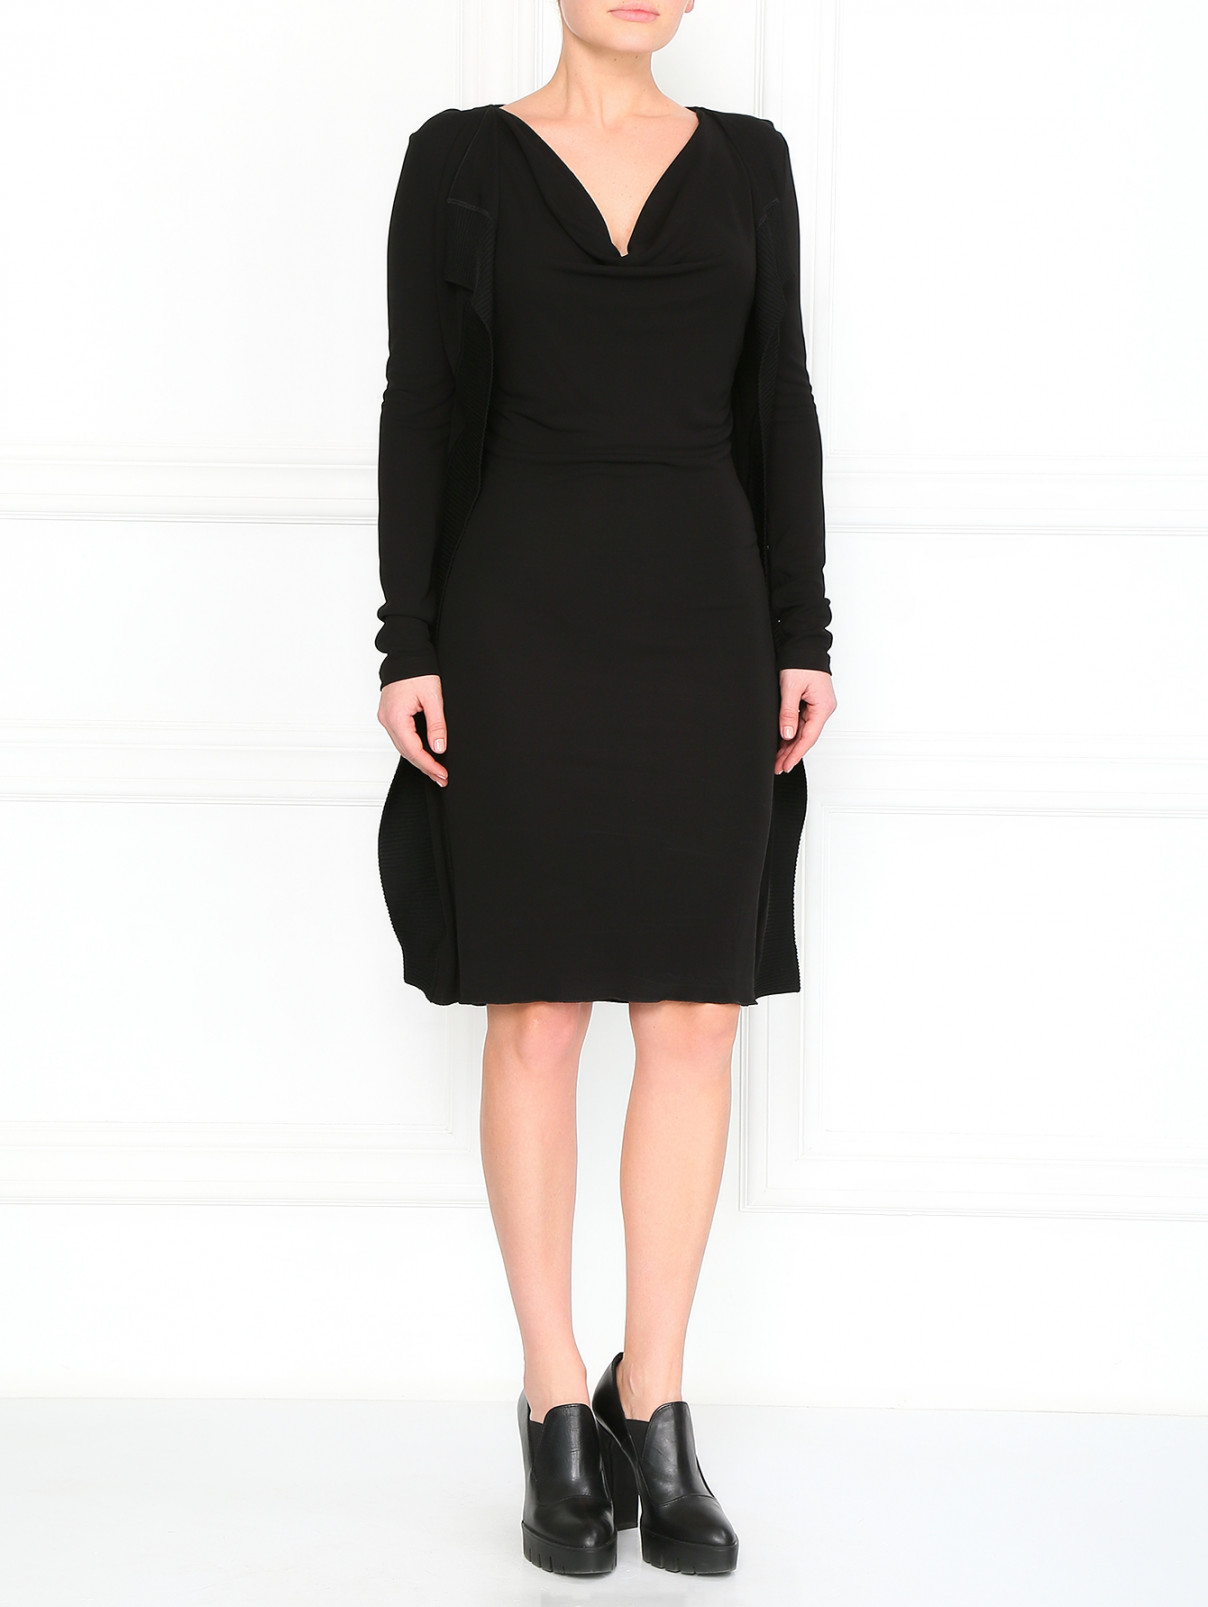 Платье с открытым воротом Jean Paul Gaultier  –  Модель Общий вид  – Цвет:  Черный